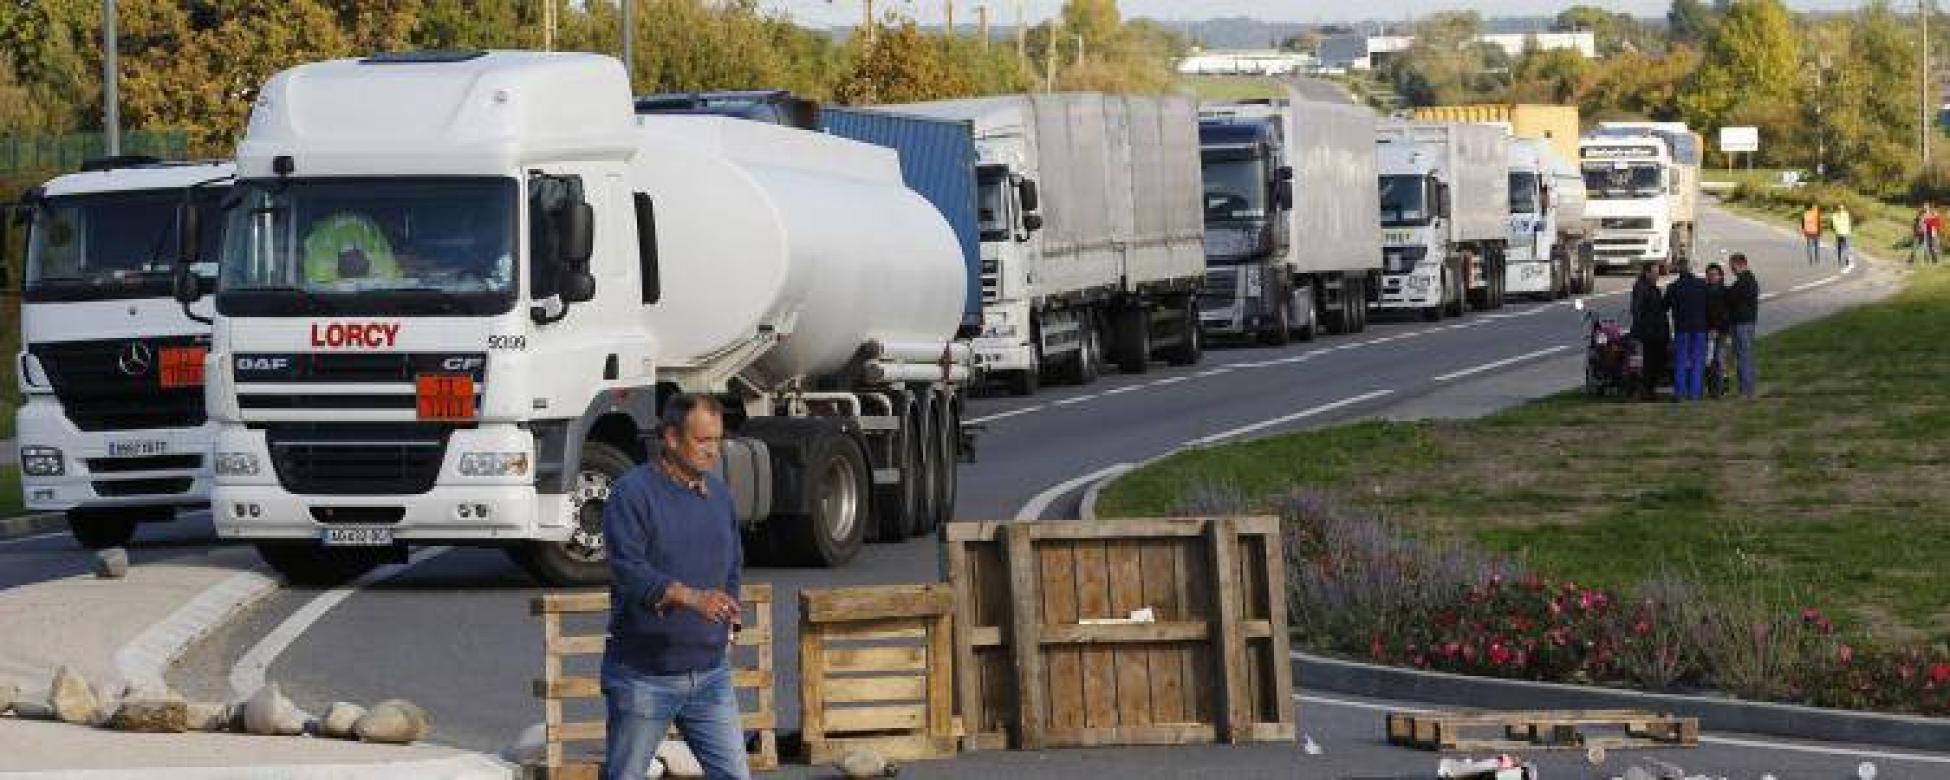 Additif Gazole transporteur - poids lourd - camion